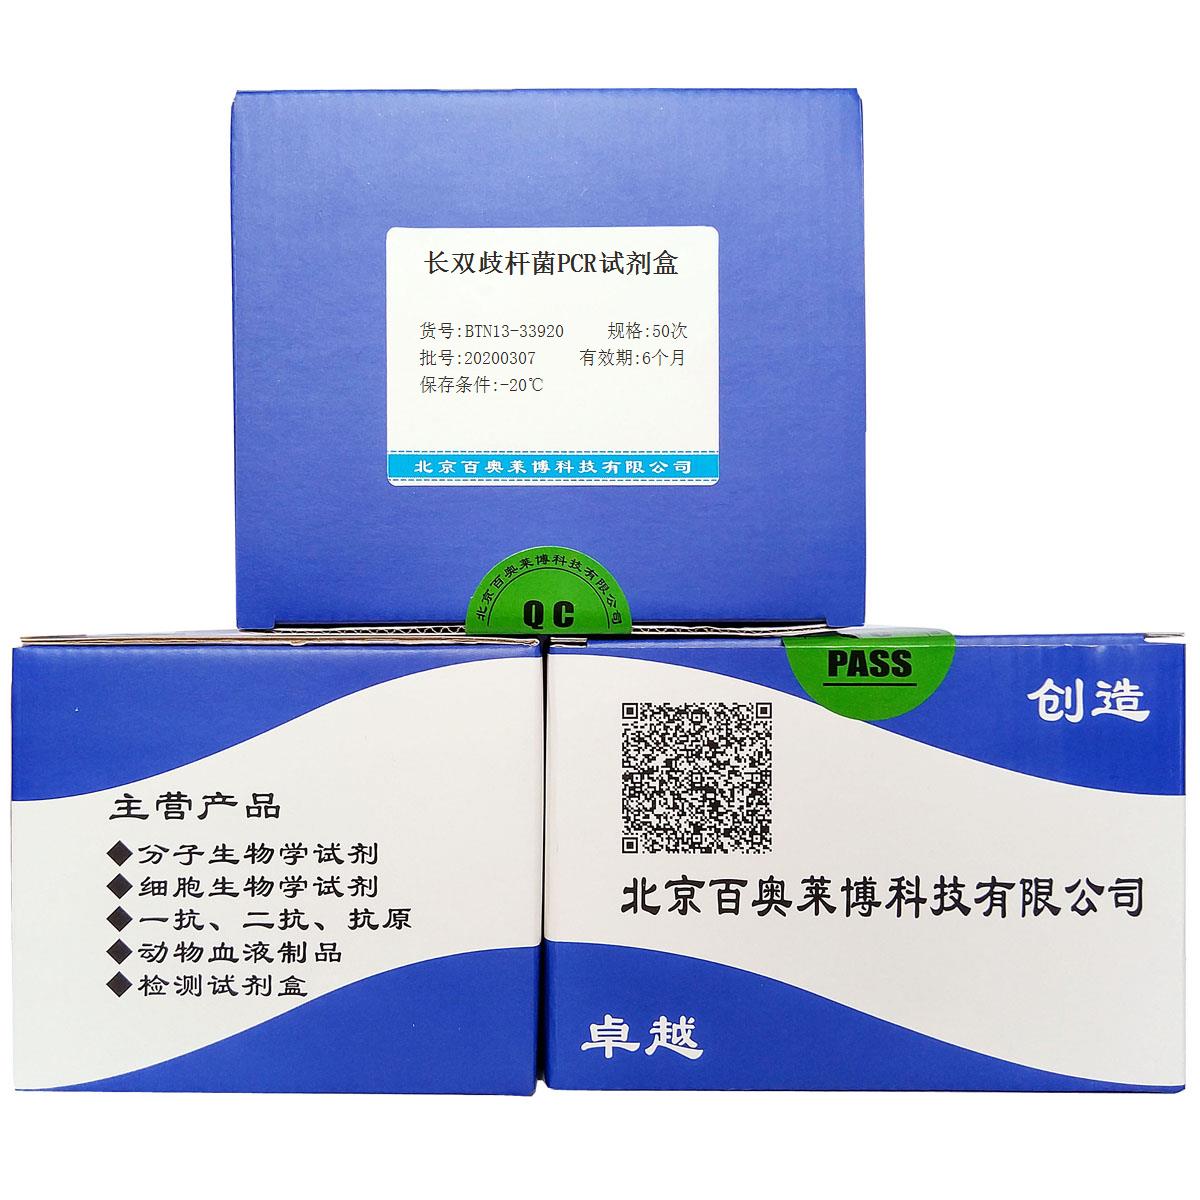 长双歧杆菌PCR试剂盒优惠促销